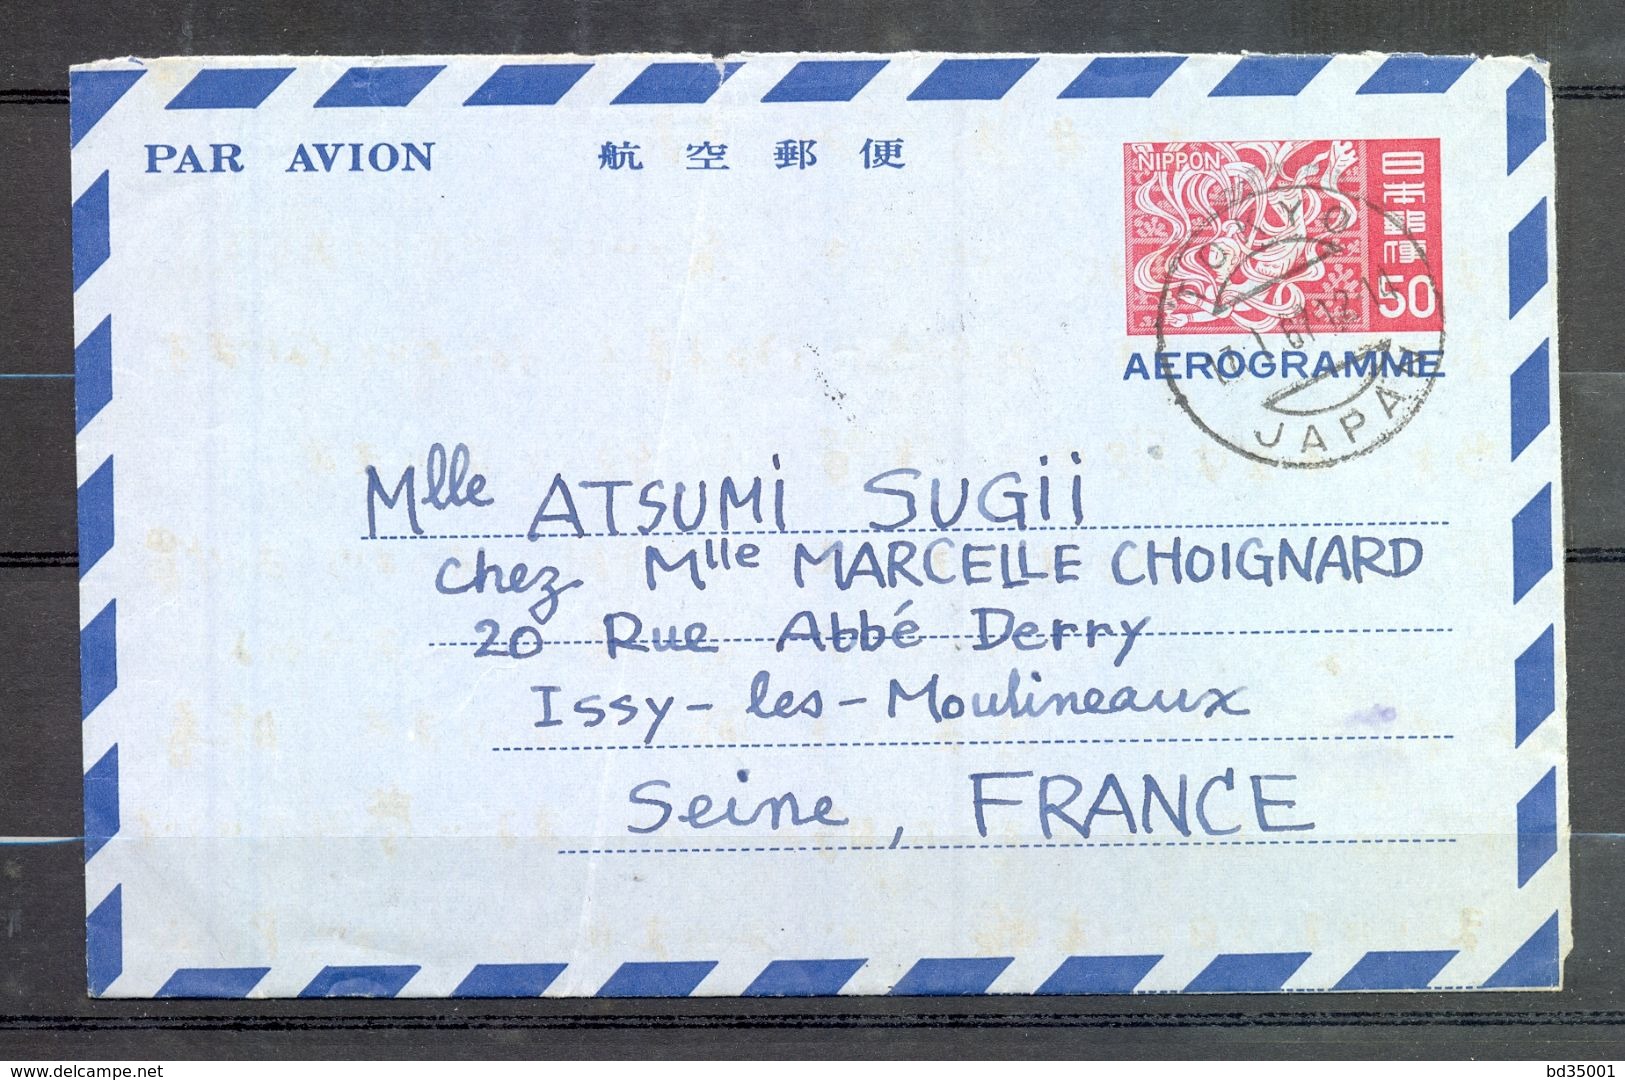 AEROGRAMME AIR LETTER PAR AVION - JAPON JAPAN - Tokyo Vers Issy Les Moulineaux - 1967 - (3) - Aerogrammi